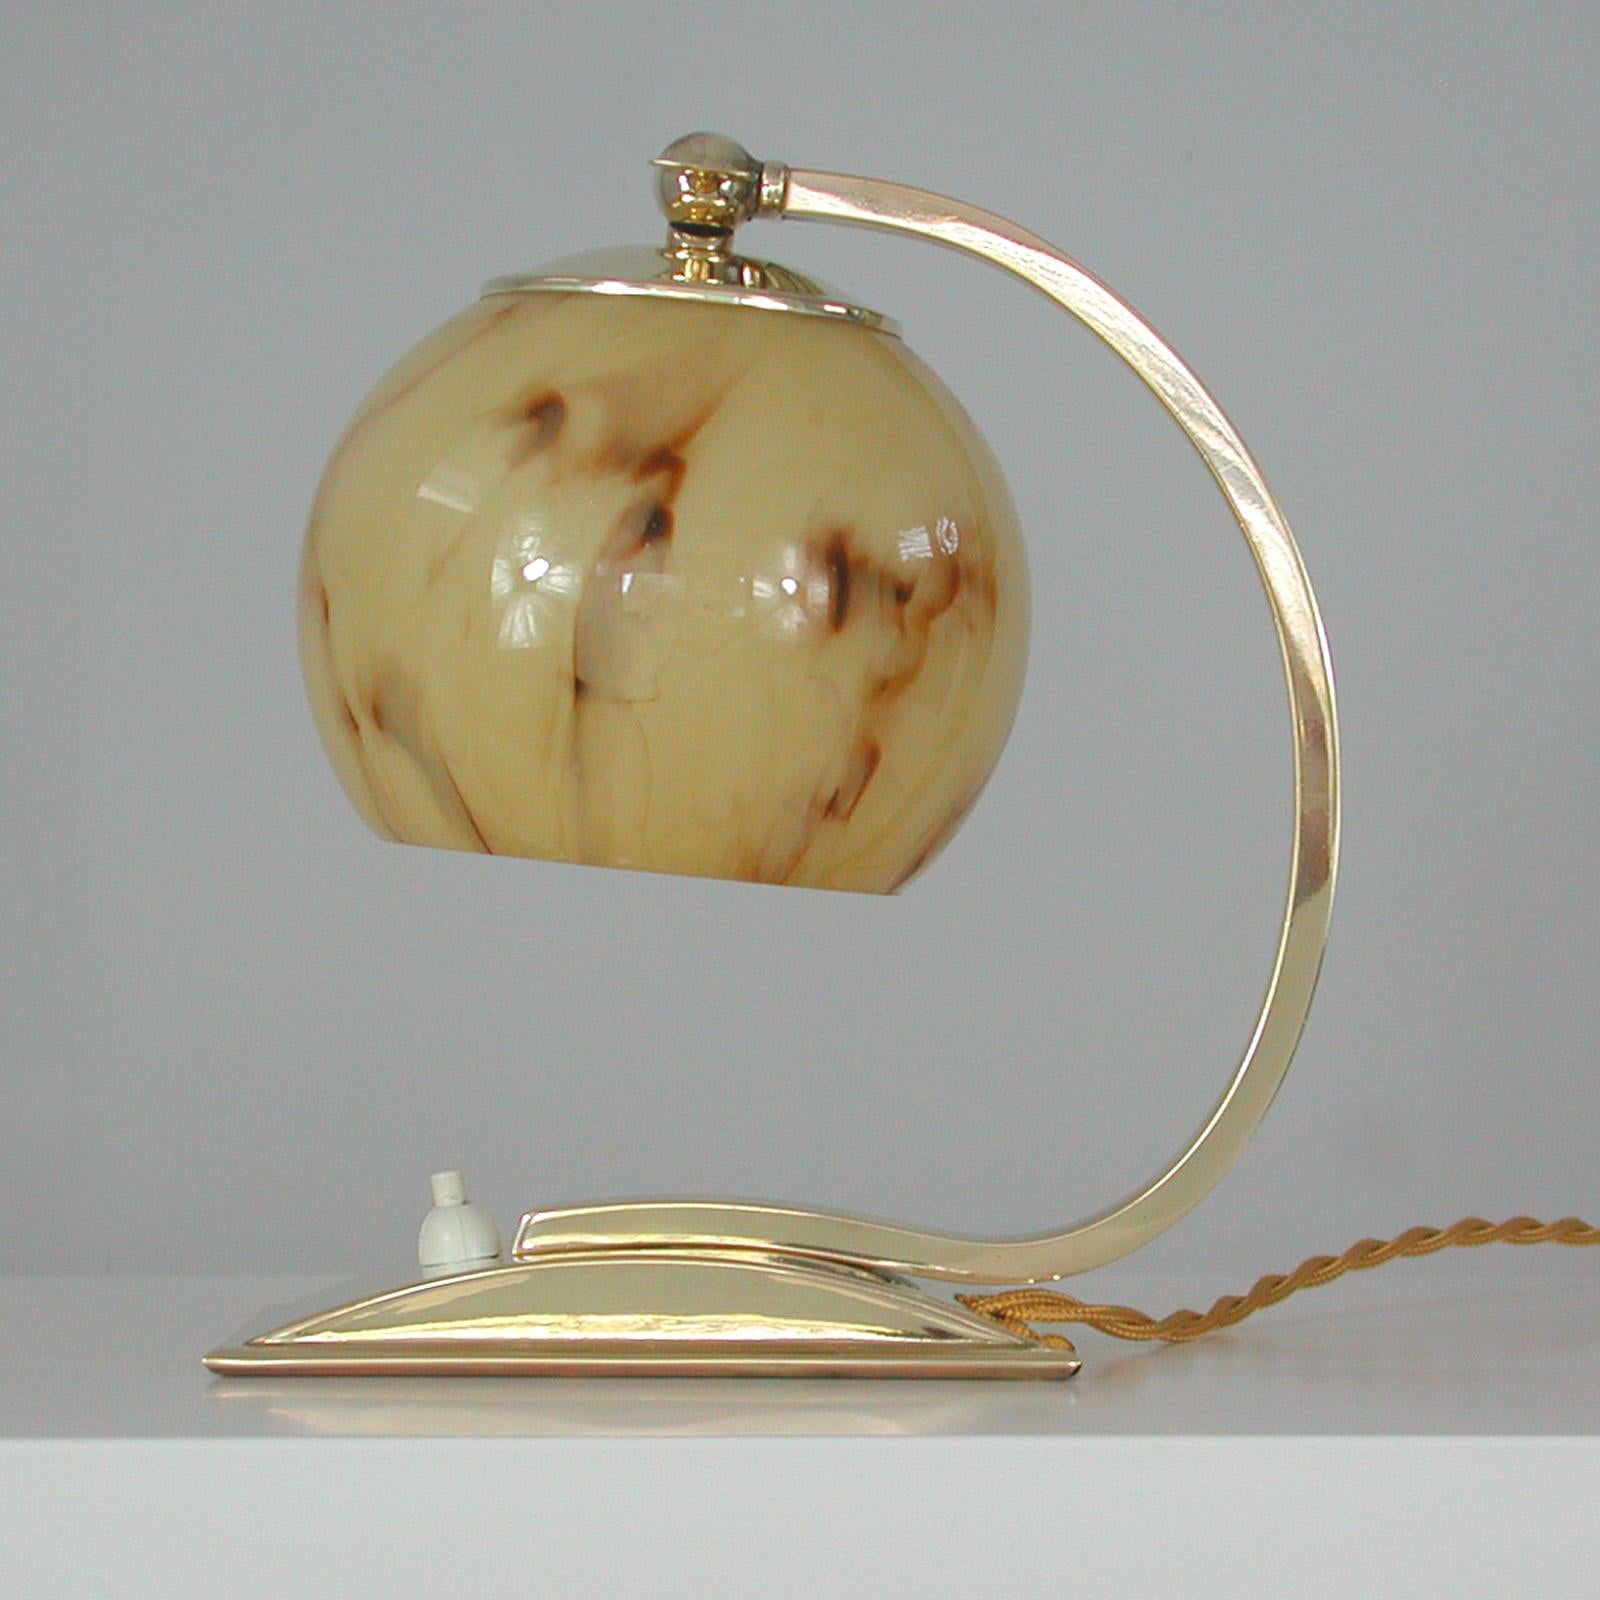 Cette lampe de table ou de chevet vintage inhabituelle a été fabriquée en Allemagne dans les années 1930-1940 pendant la période du Bauhaus. Il est fabriqué en laiton poli et possède un abat-jour réglable en verre opalin marbré crème.

La lampe